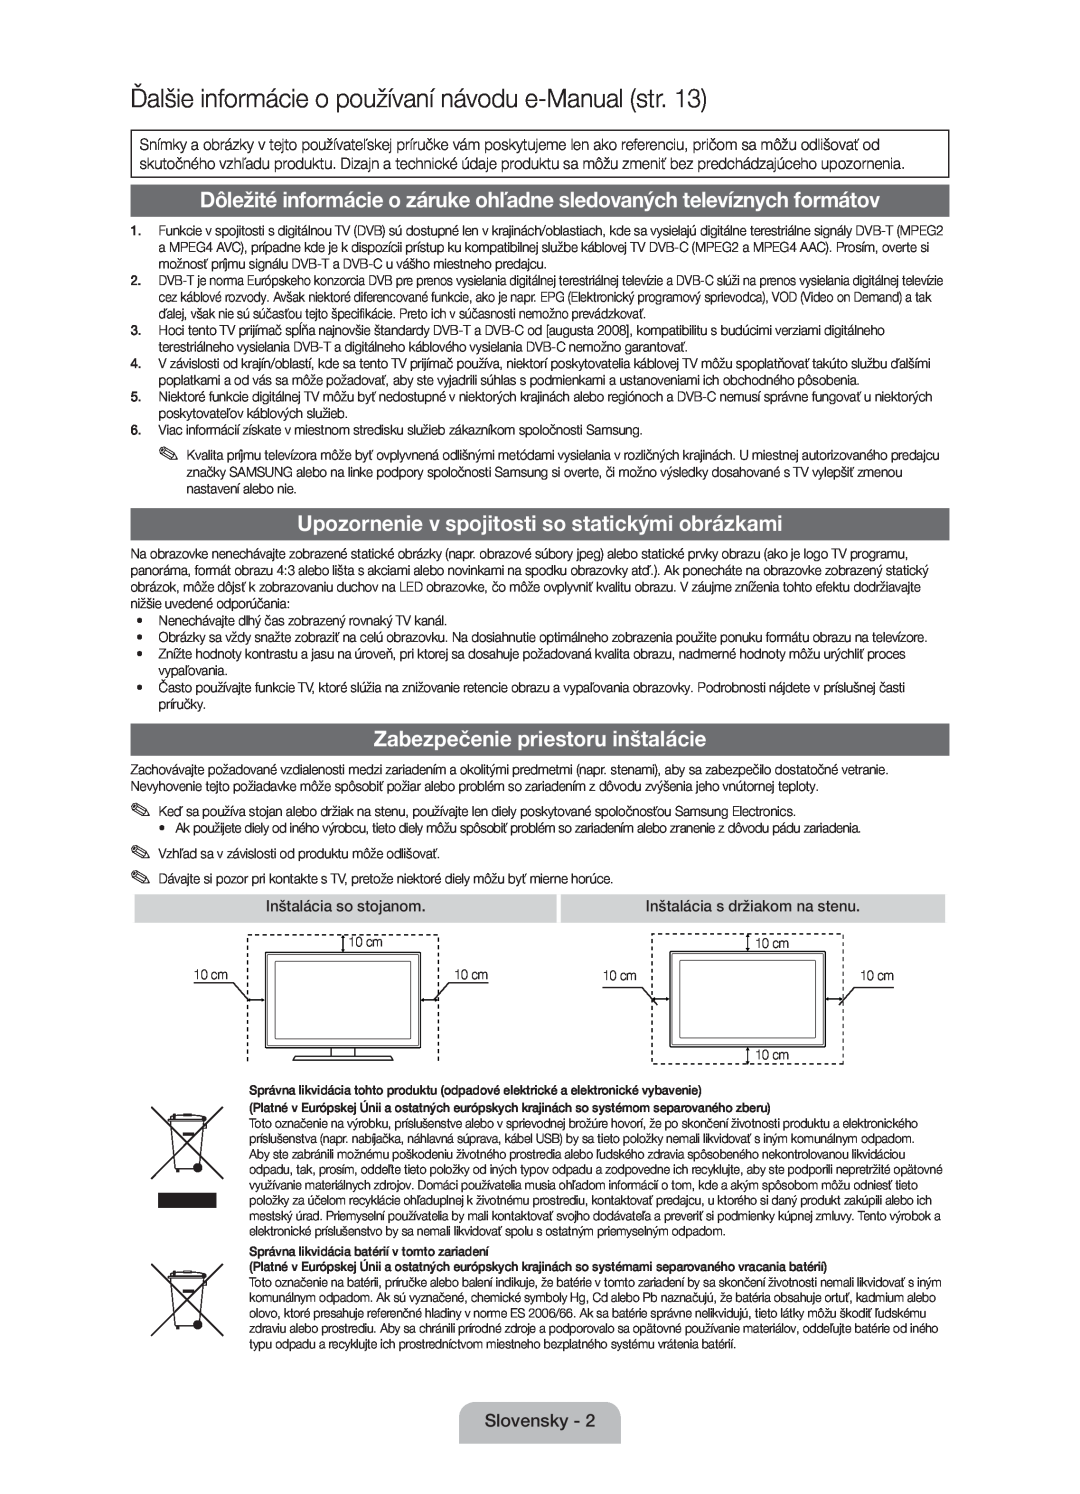 Samsung UE32D5000PWXZT Ďalšie informácie o používaní návodu e-Manual str, Upozornenie v spojitosti so statickými obrázkami 